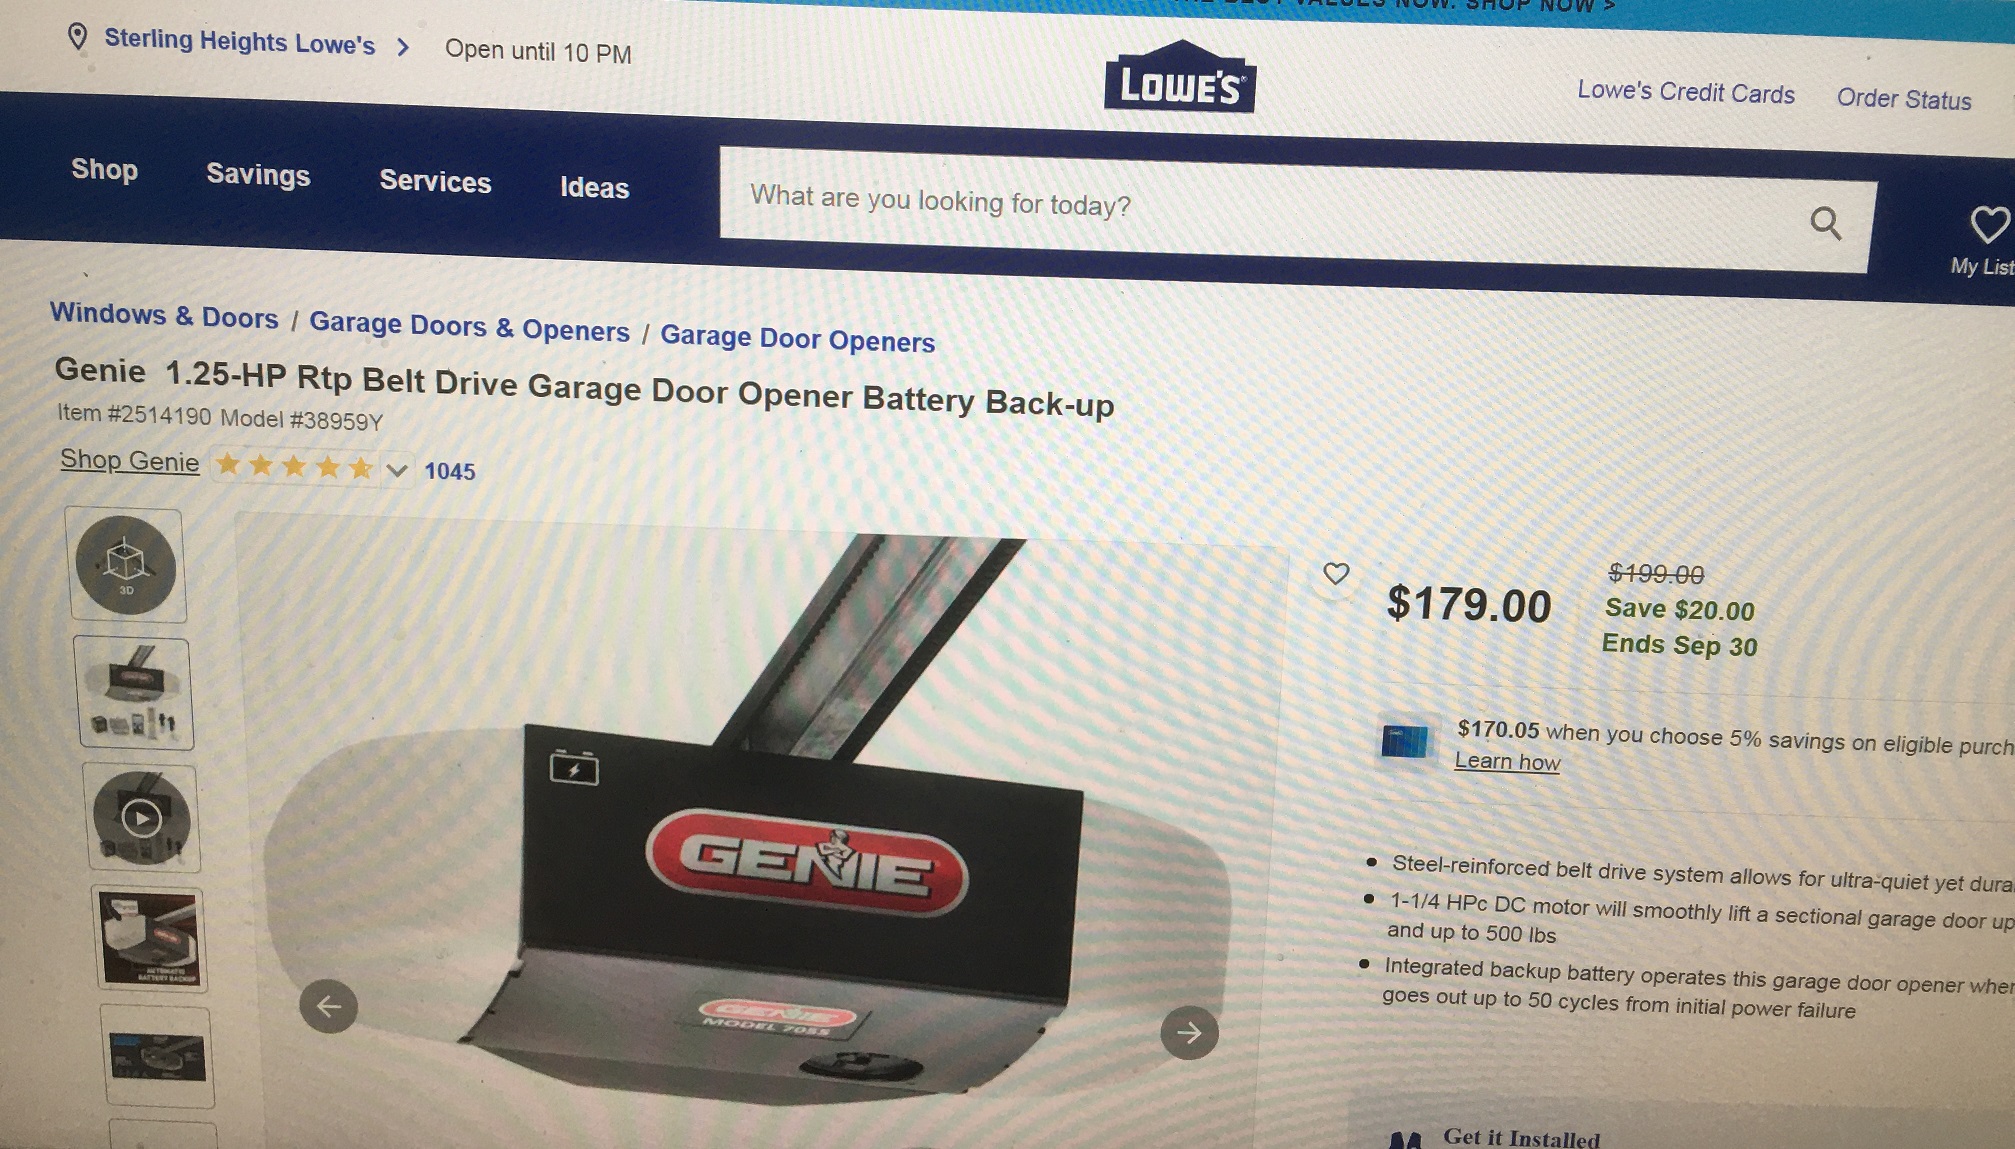 Genie  1.25-HP Rtp Belt Drive Garage Door Opener Battery Back-up $180